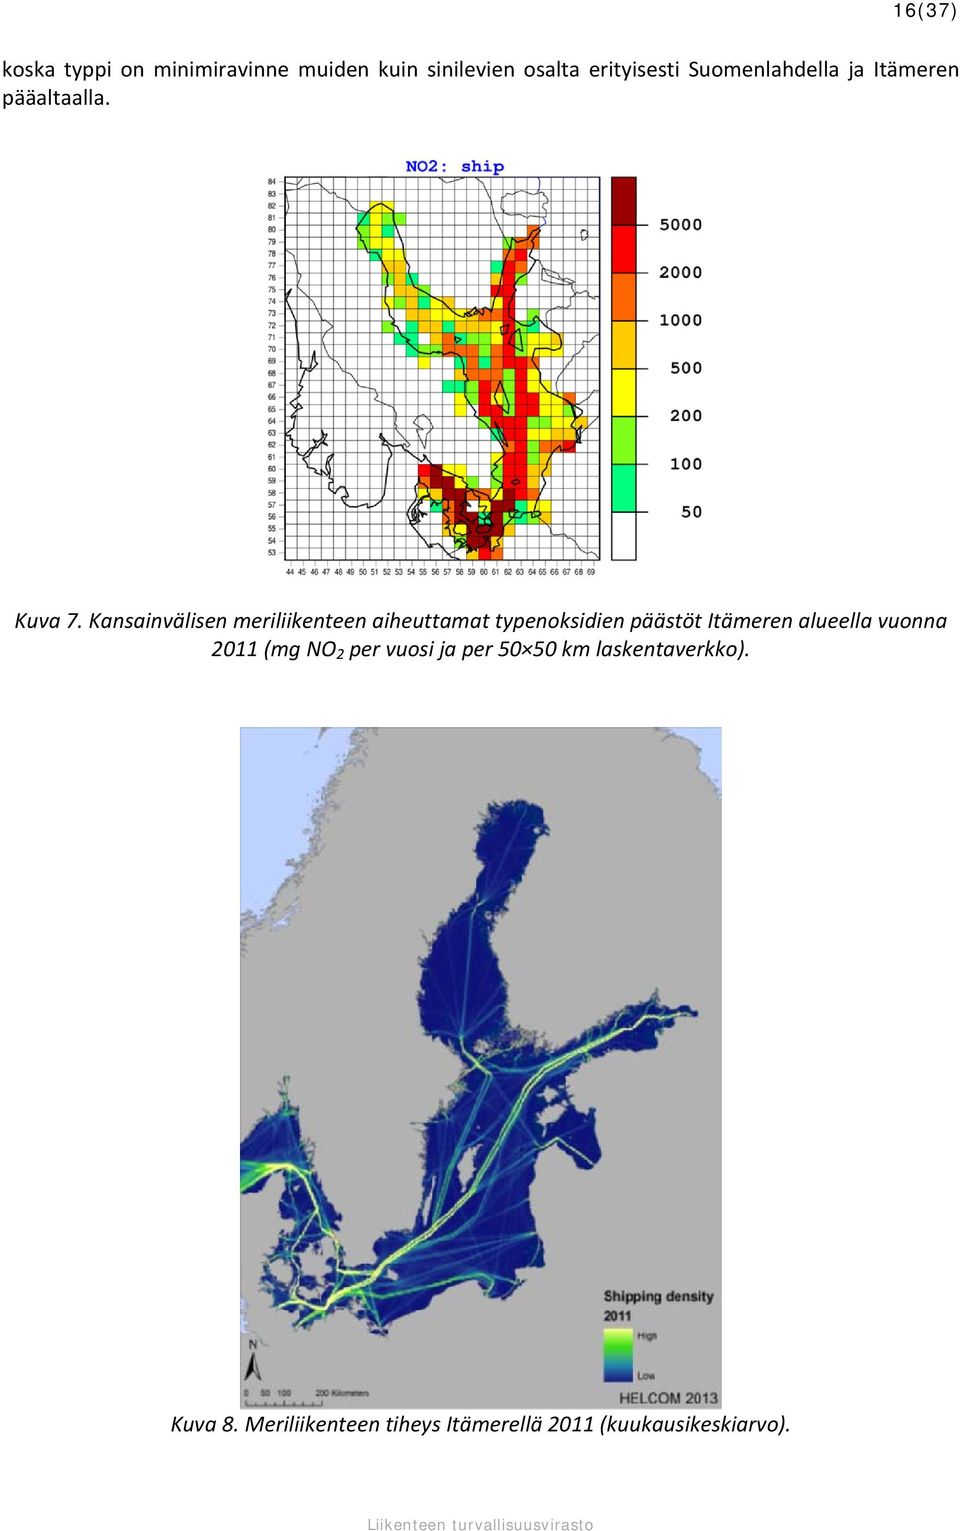 Kansainvälisen meriliikenteen aiheuttamat typenoksidien päästöt Itämeren alueella